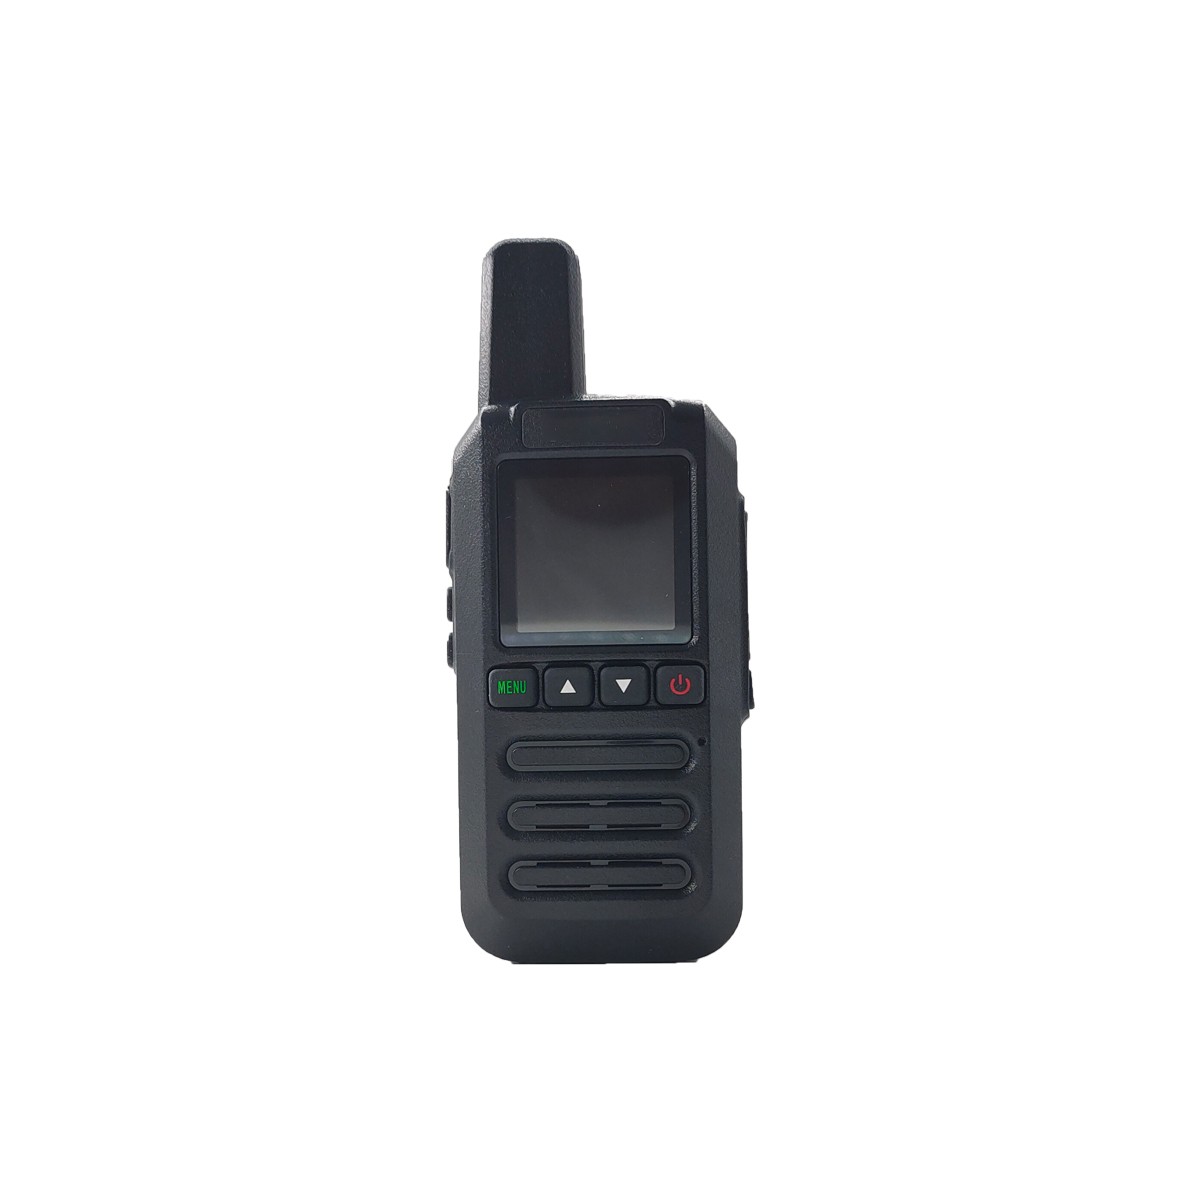 QYT mini 4g poc 50km walkie talkie NH-40 with sim card